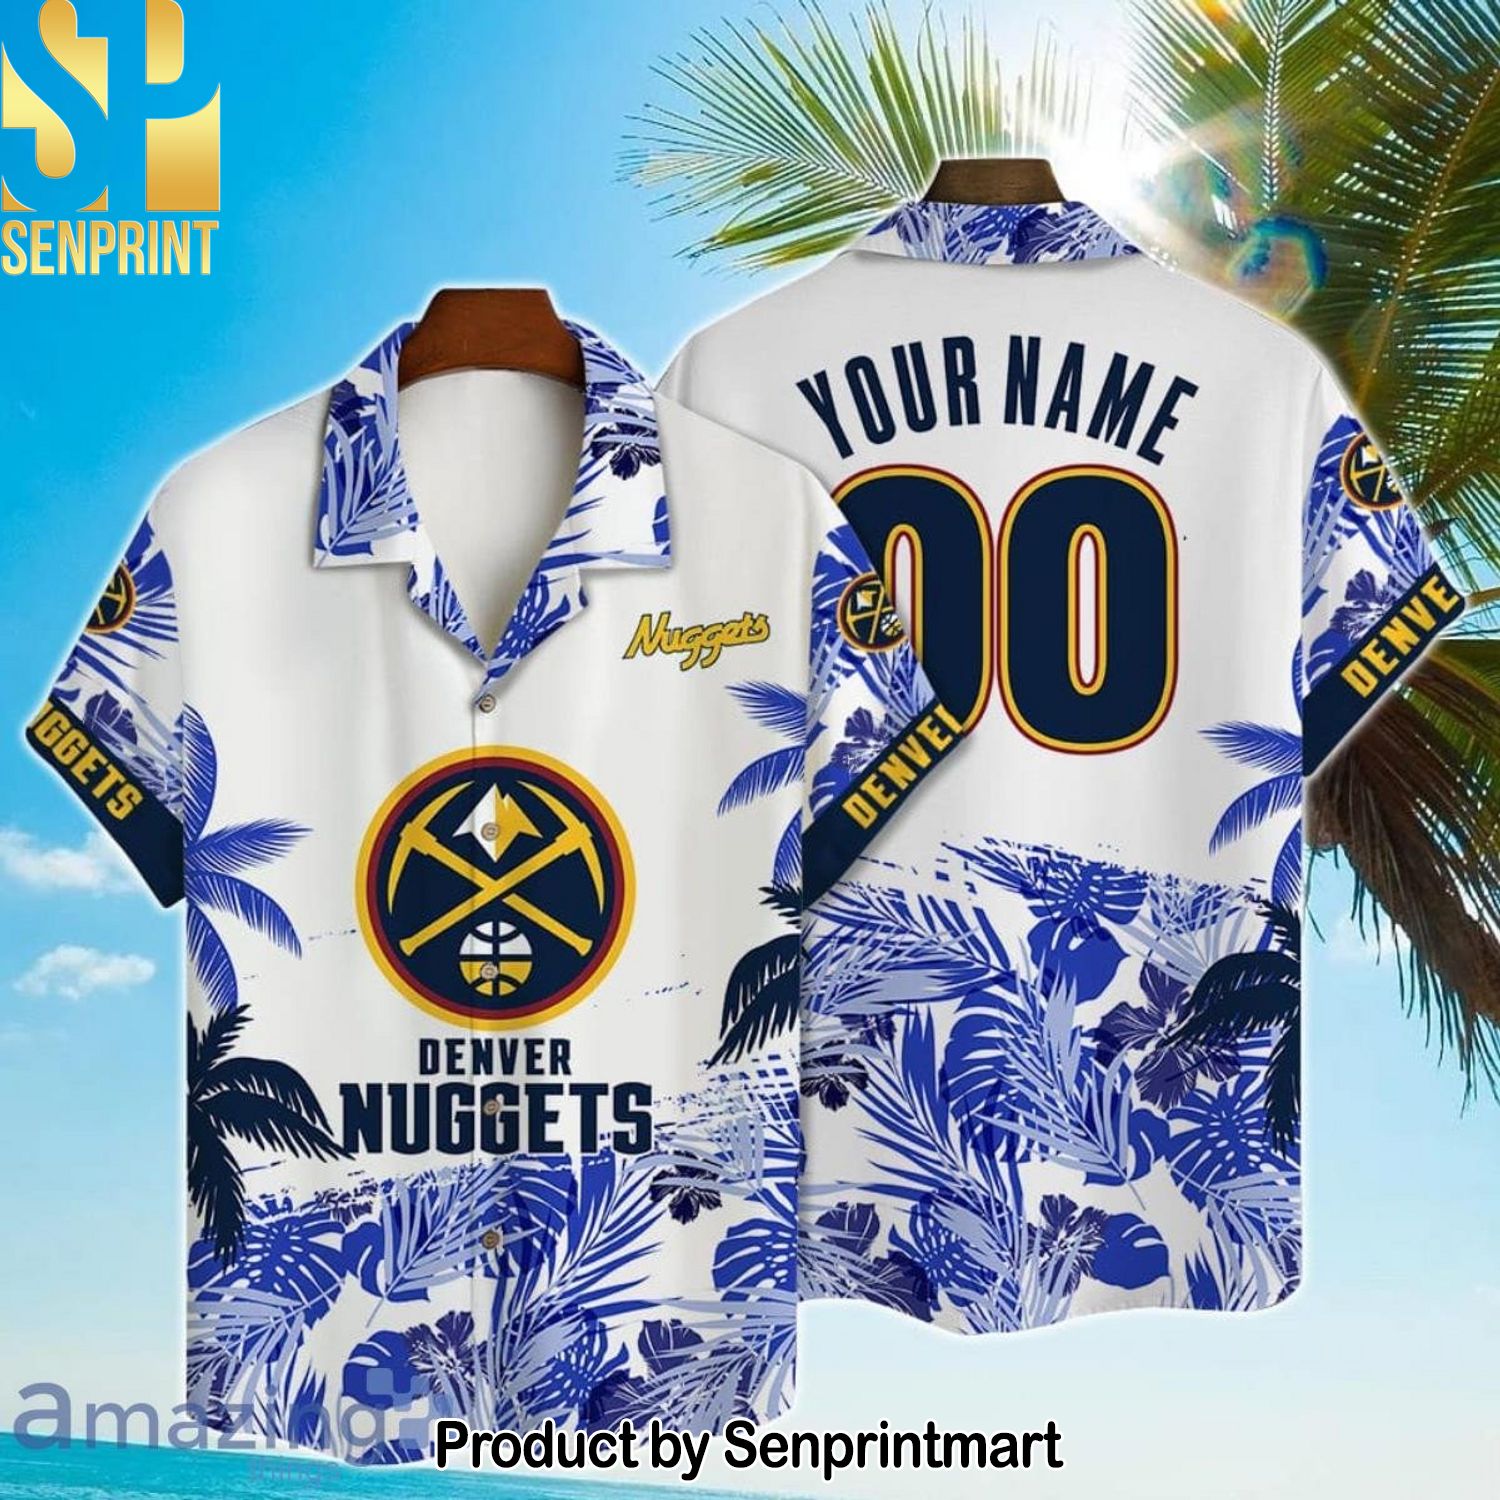 Denver Nuggets NBA Champions High Fashion Hawaiian Shirt and Shorts